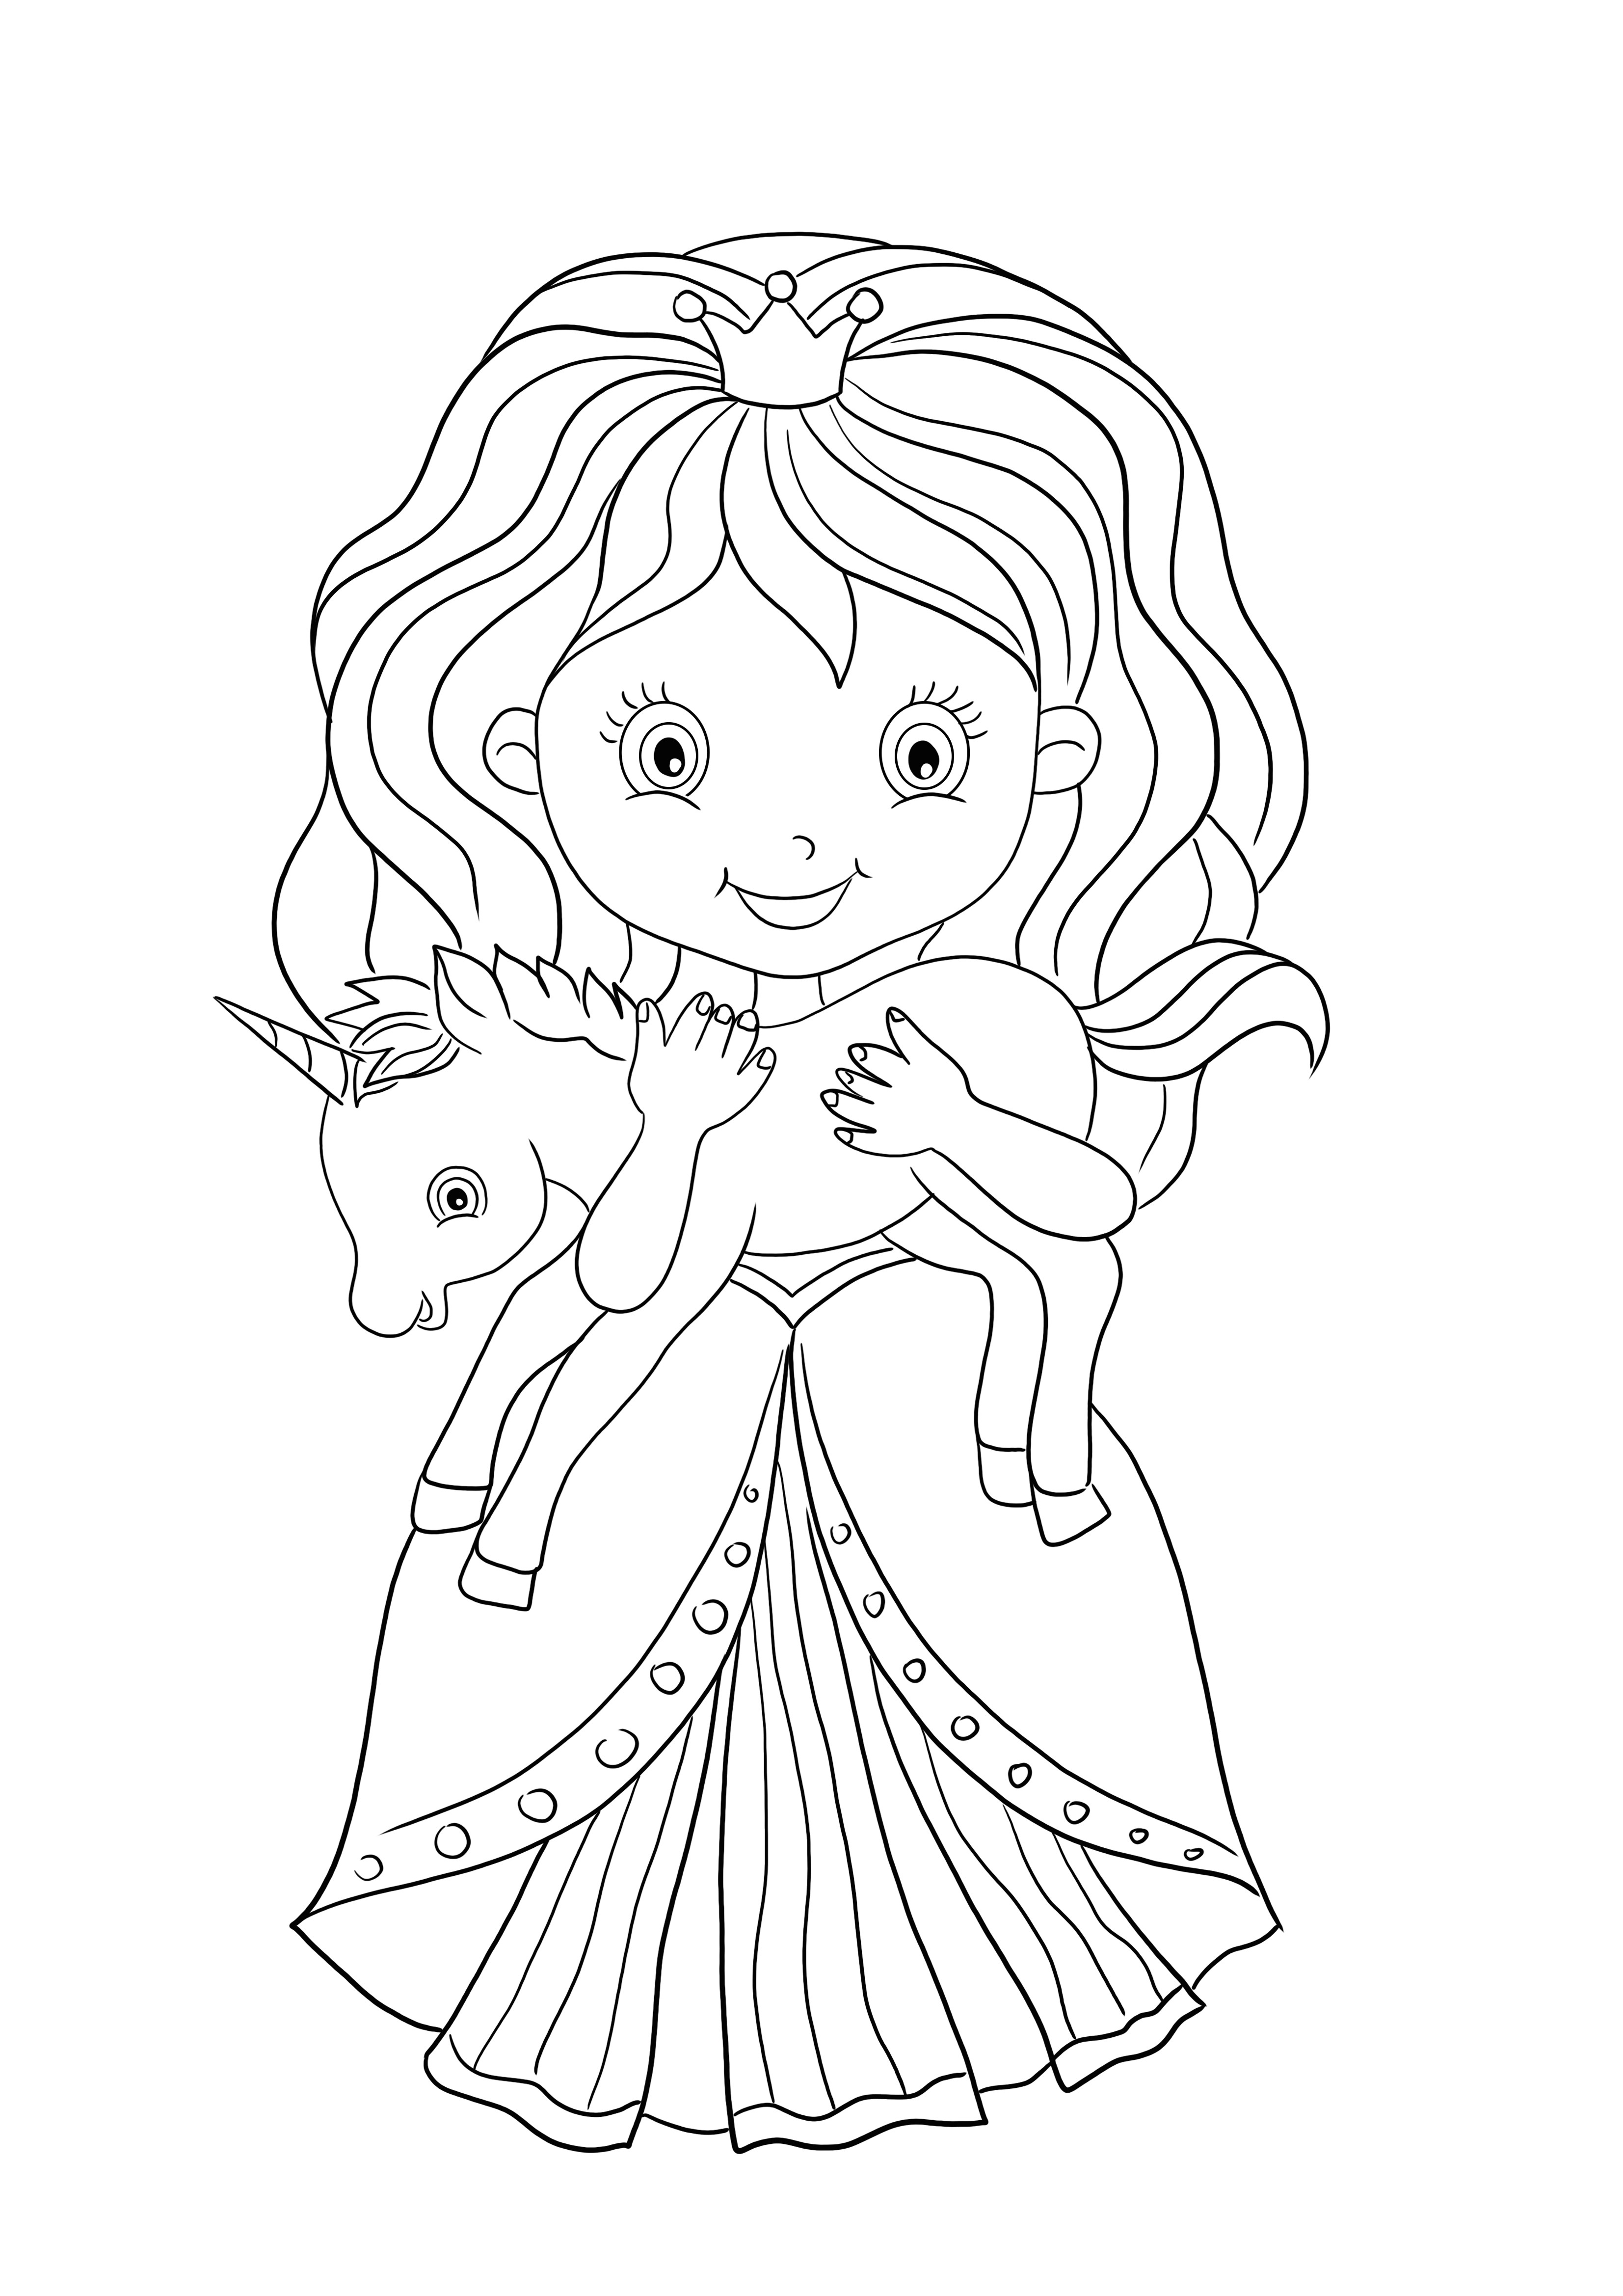 Desenho de um brinquedo de unicórnio e uma princesa para colorir grátis para baixar e imprimir